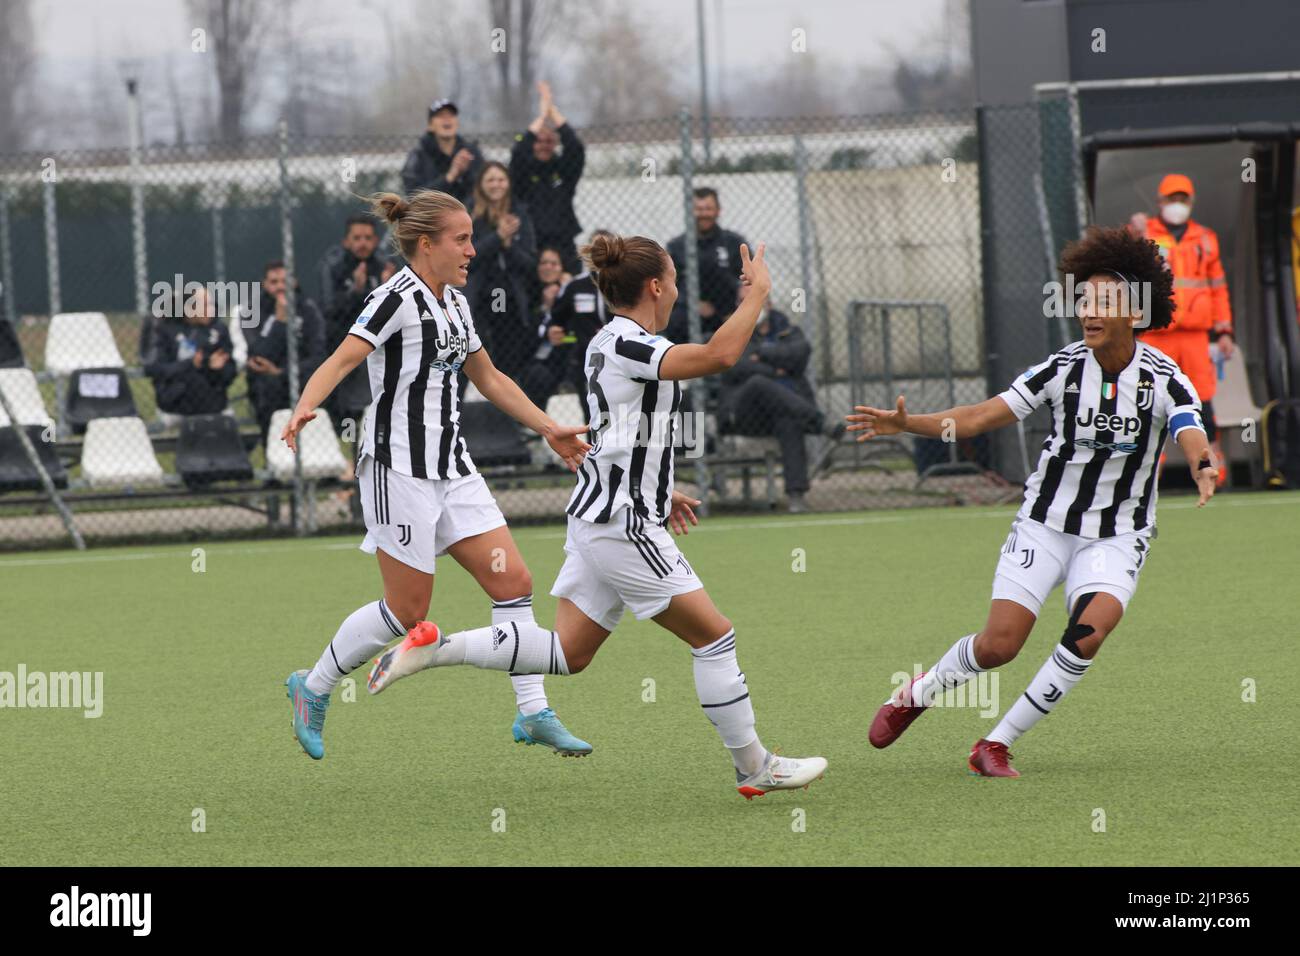 Juventus f.c. vs inter women